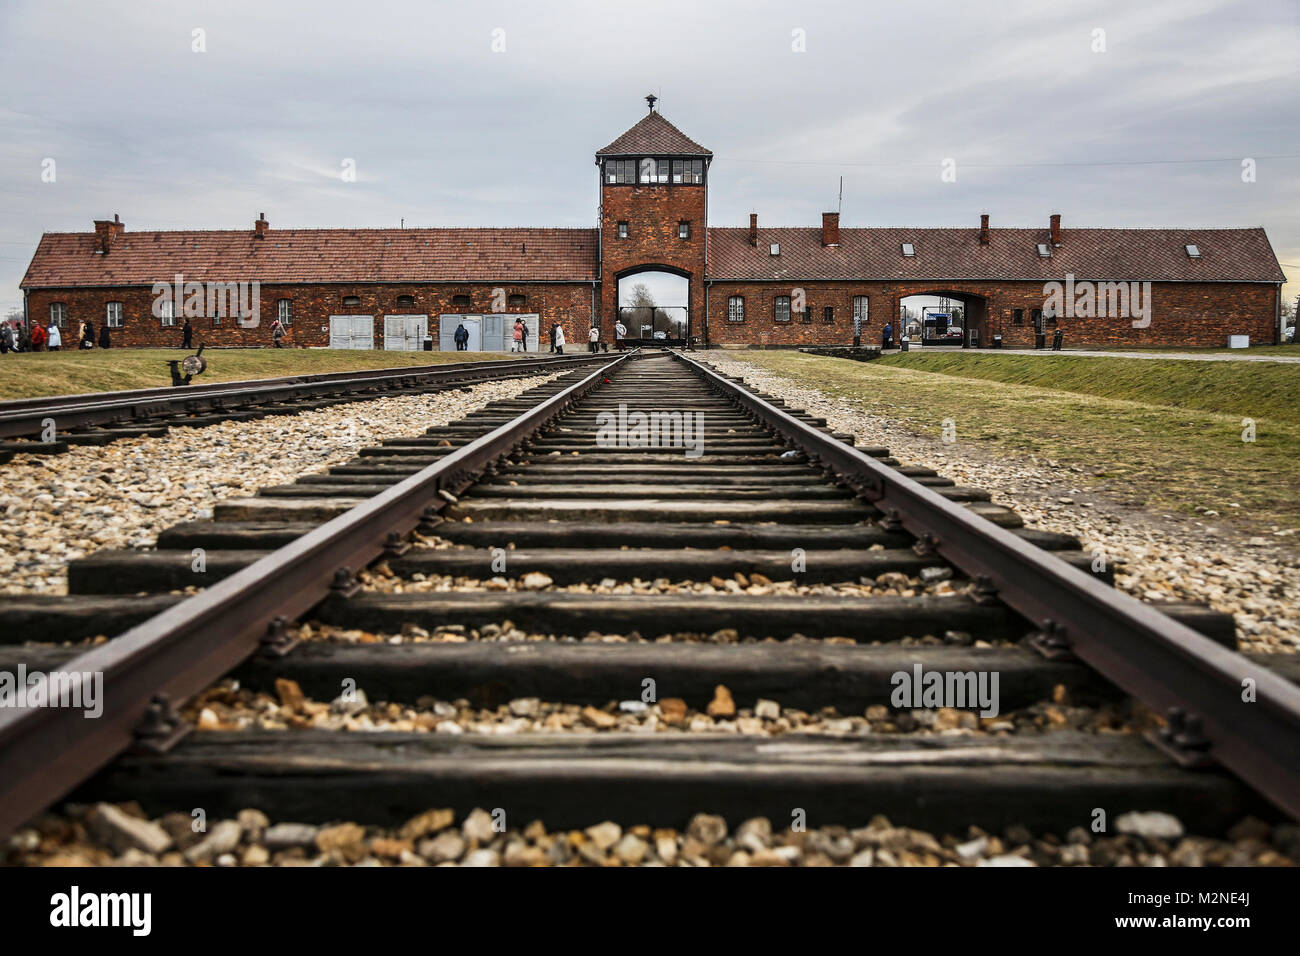 OSWIECIM, Polen - 27 Januar, 2016: Das Tor des Todes des früheren deutschen nationalsozialistischen Konzentrations- und Vernichtungslager von Auschwitz Birkenau II. Stockfoto